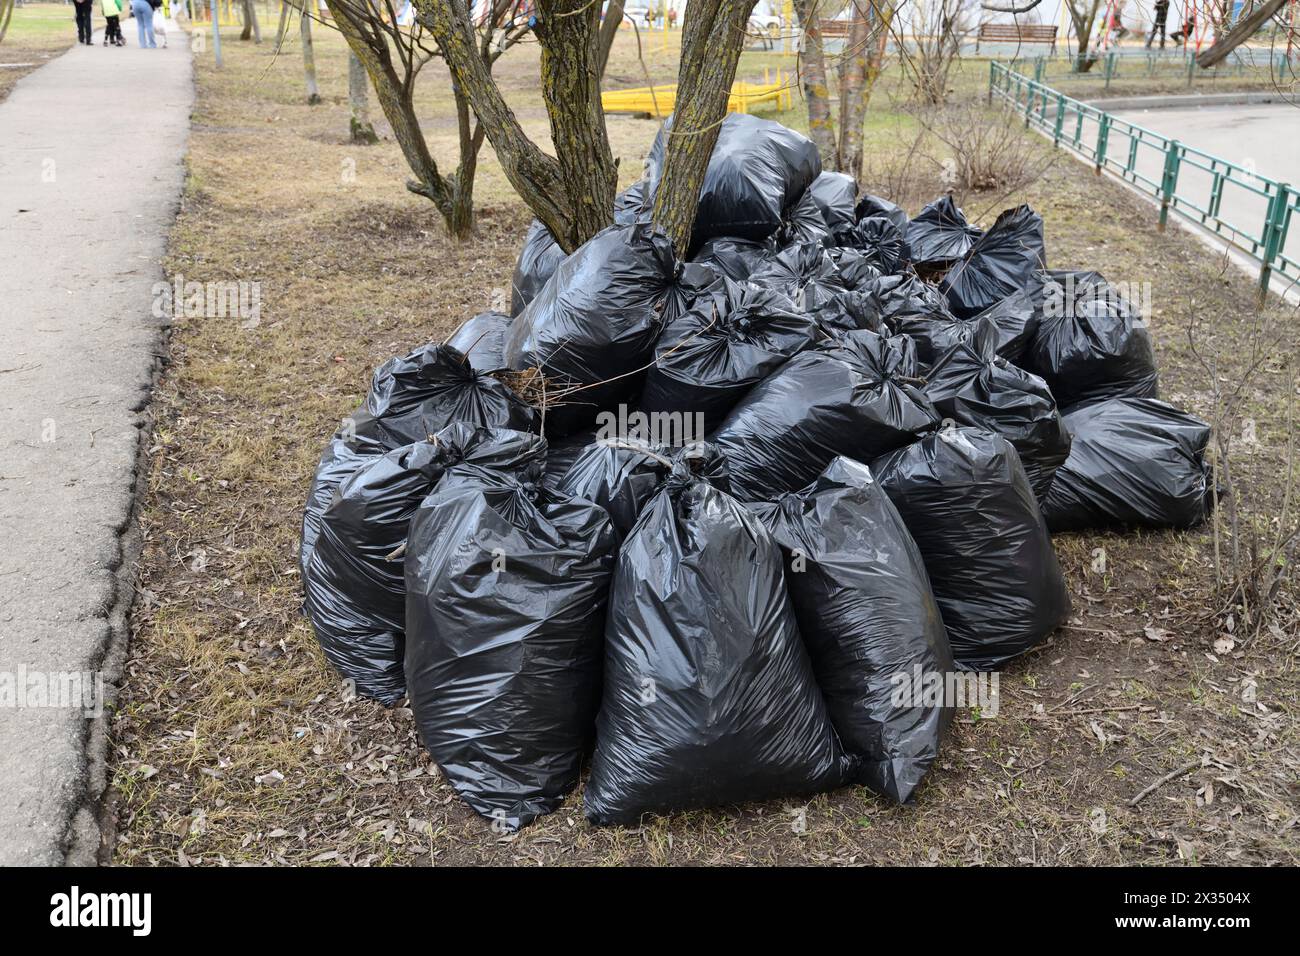 La spazzatura primaverile e le foglie dell'anno scorso in sacchi neri vicino all'albero Foto Stock